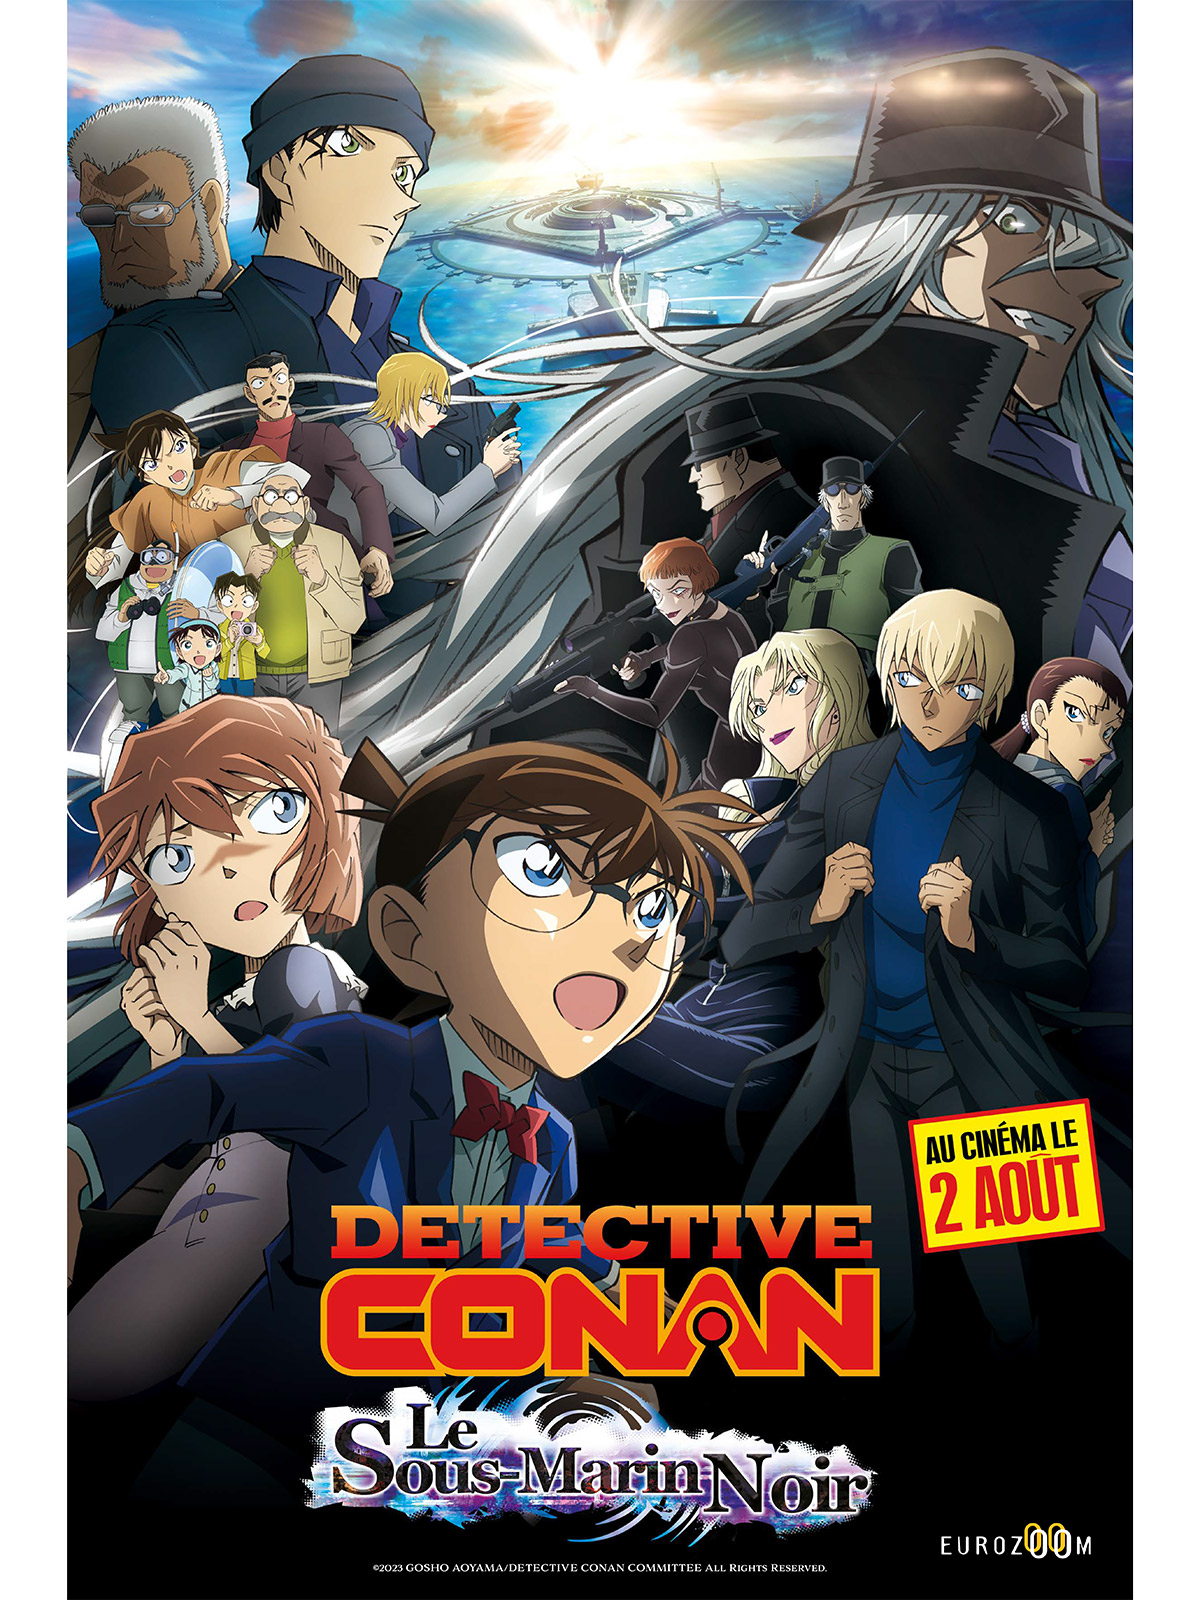 Voir Film Détective Conan: le sous-marin noir - film 2023 streaming VF gratuit complet